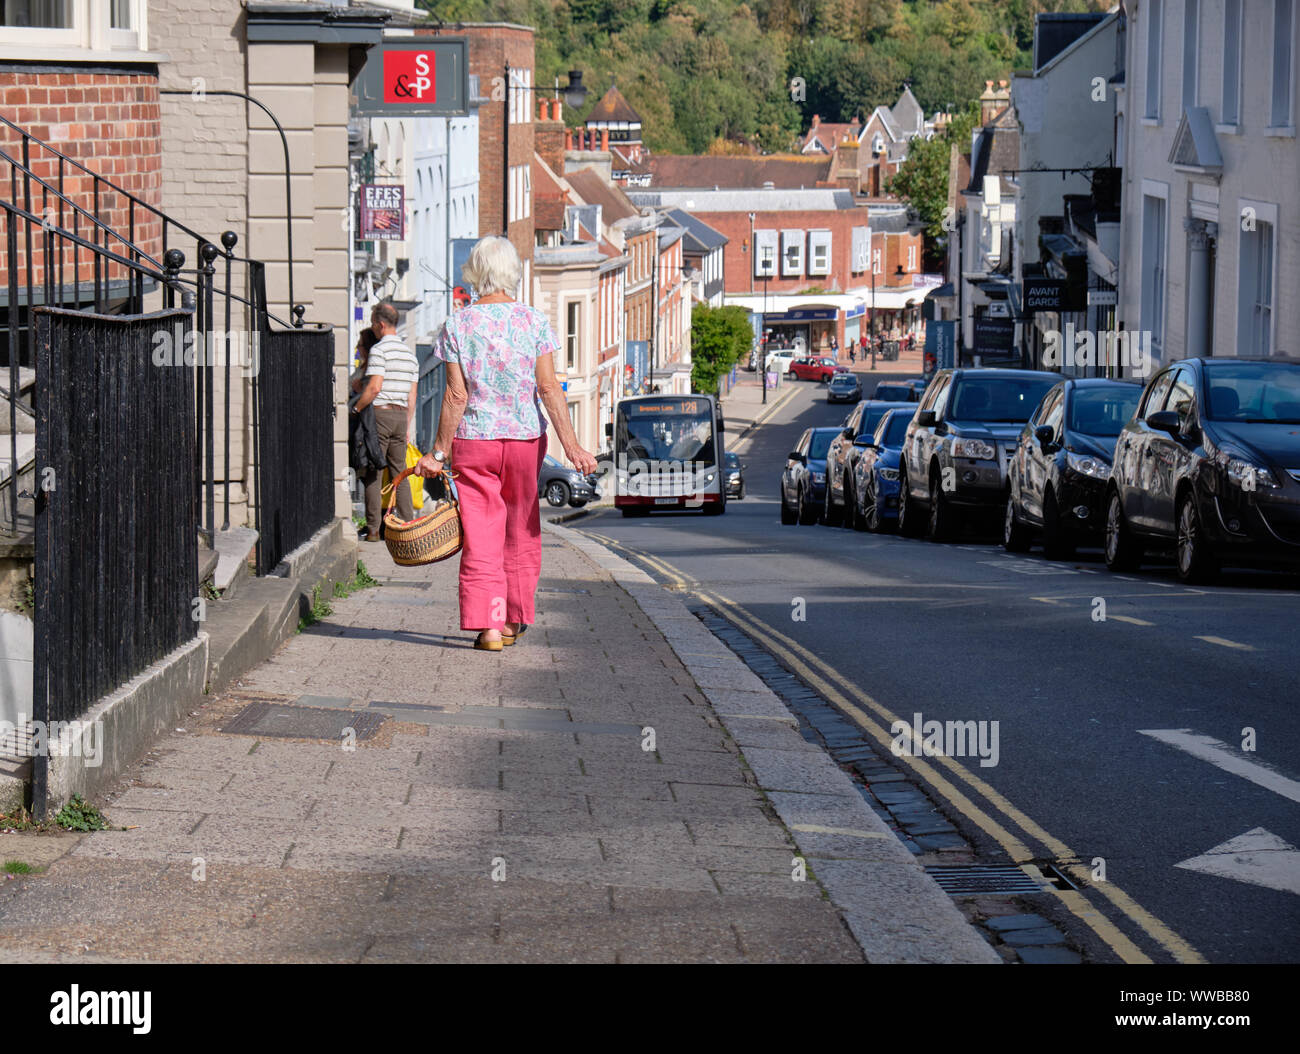 Femme avec un panier de descente à pied vers Lewes Road, au centre-ville, tandis que les chefs d'autobus à d'autres cours. Lewes, Royaume-Uni, Septembre 2019 Banque D'Images